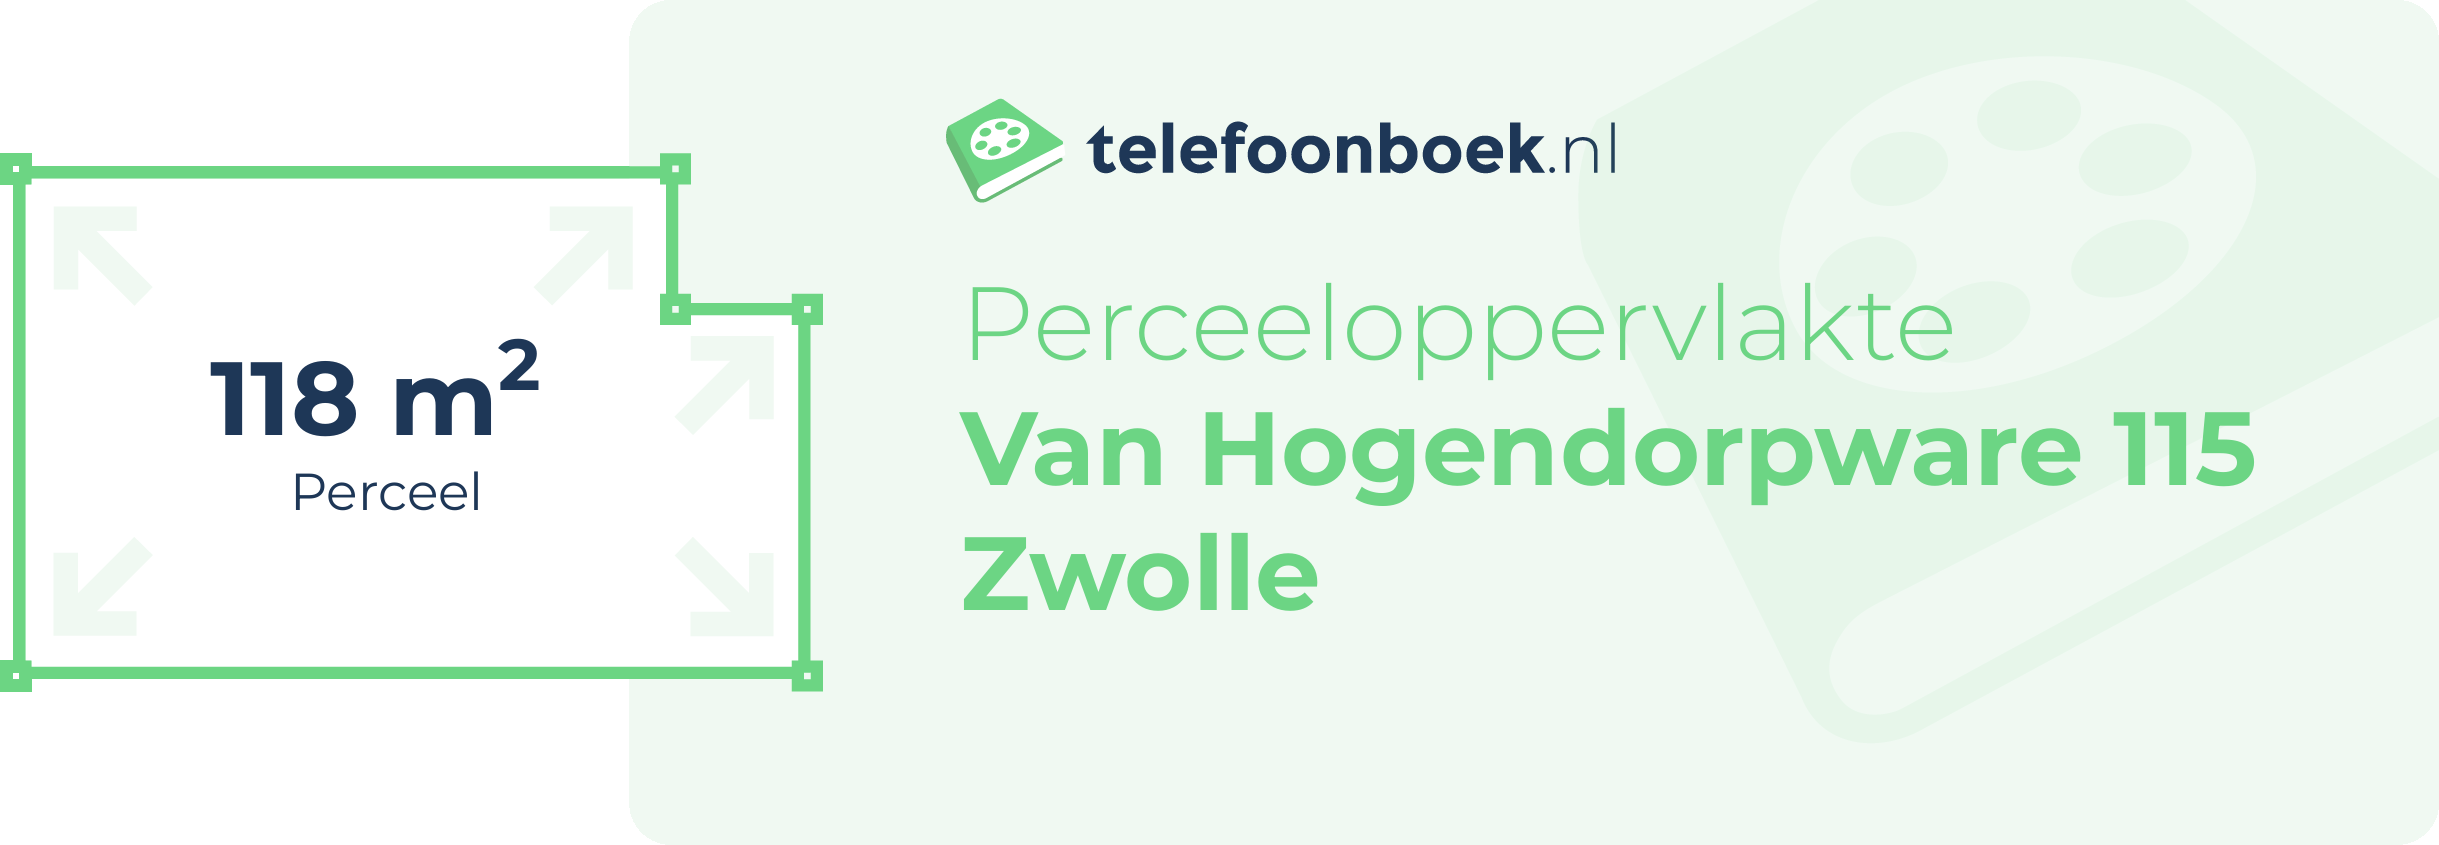 Perceeloppervlakte Van Hogendorpware 115 Zwolle